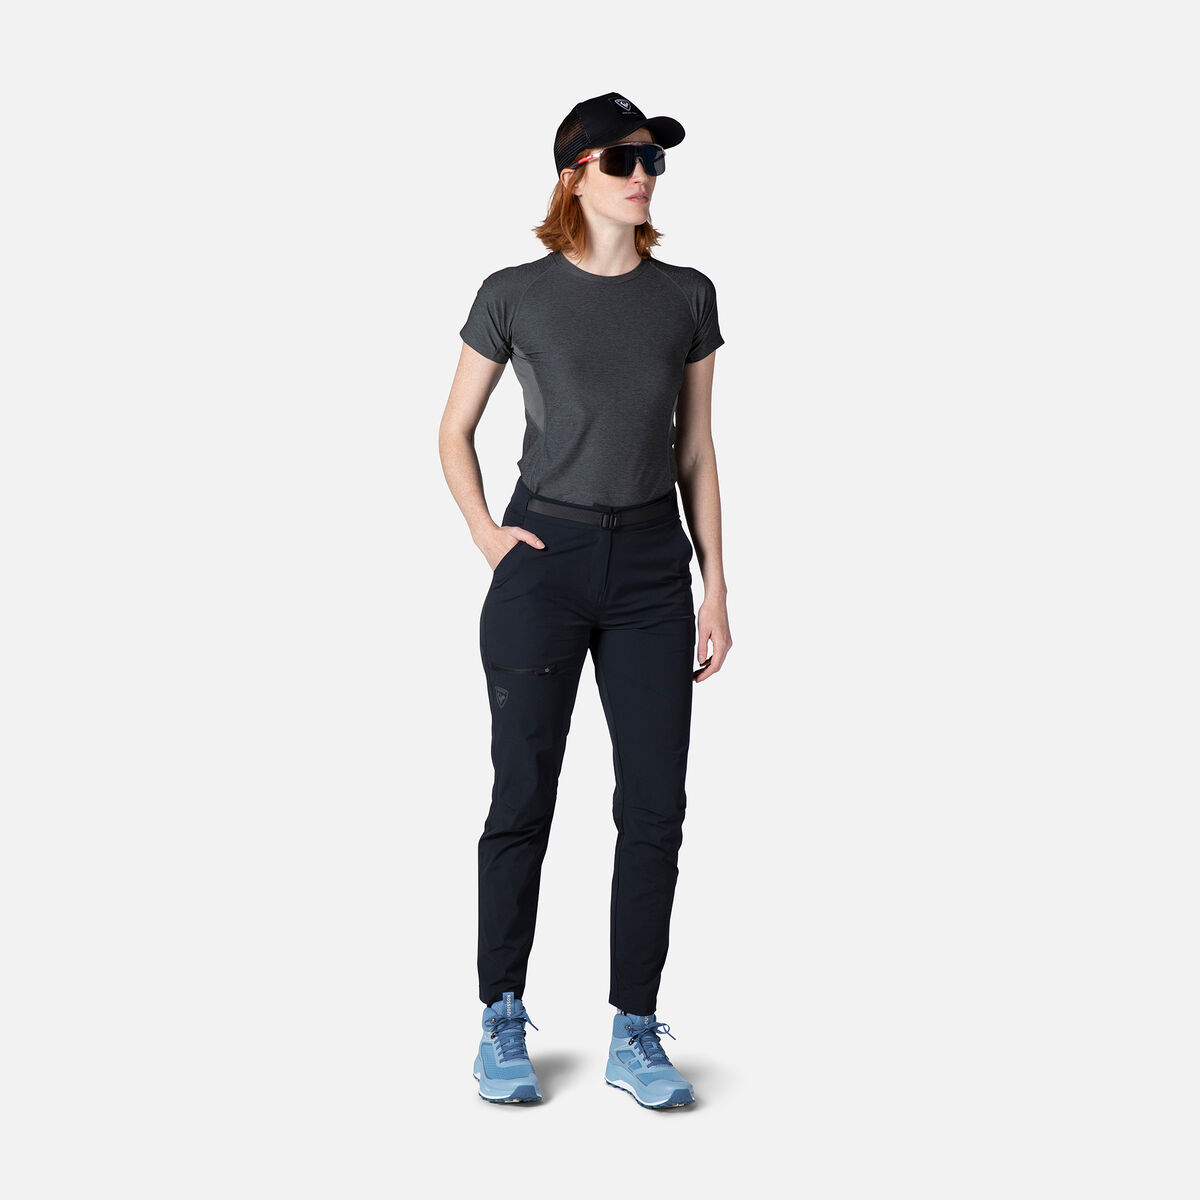 Camiseta de senderismo con efecto Melange para mujer